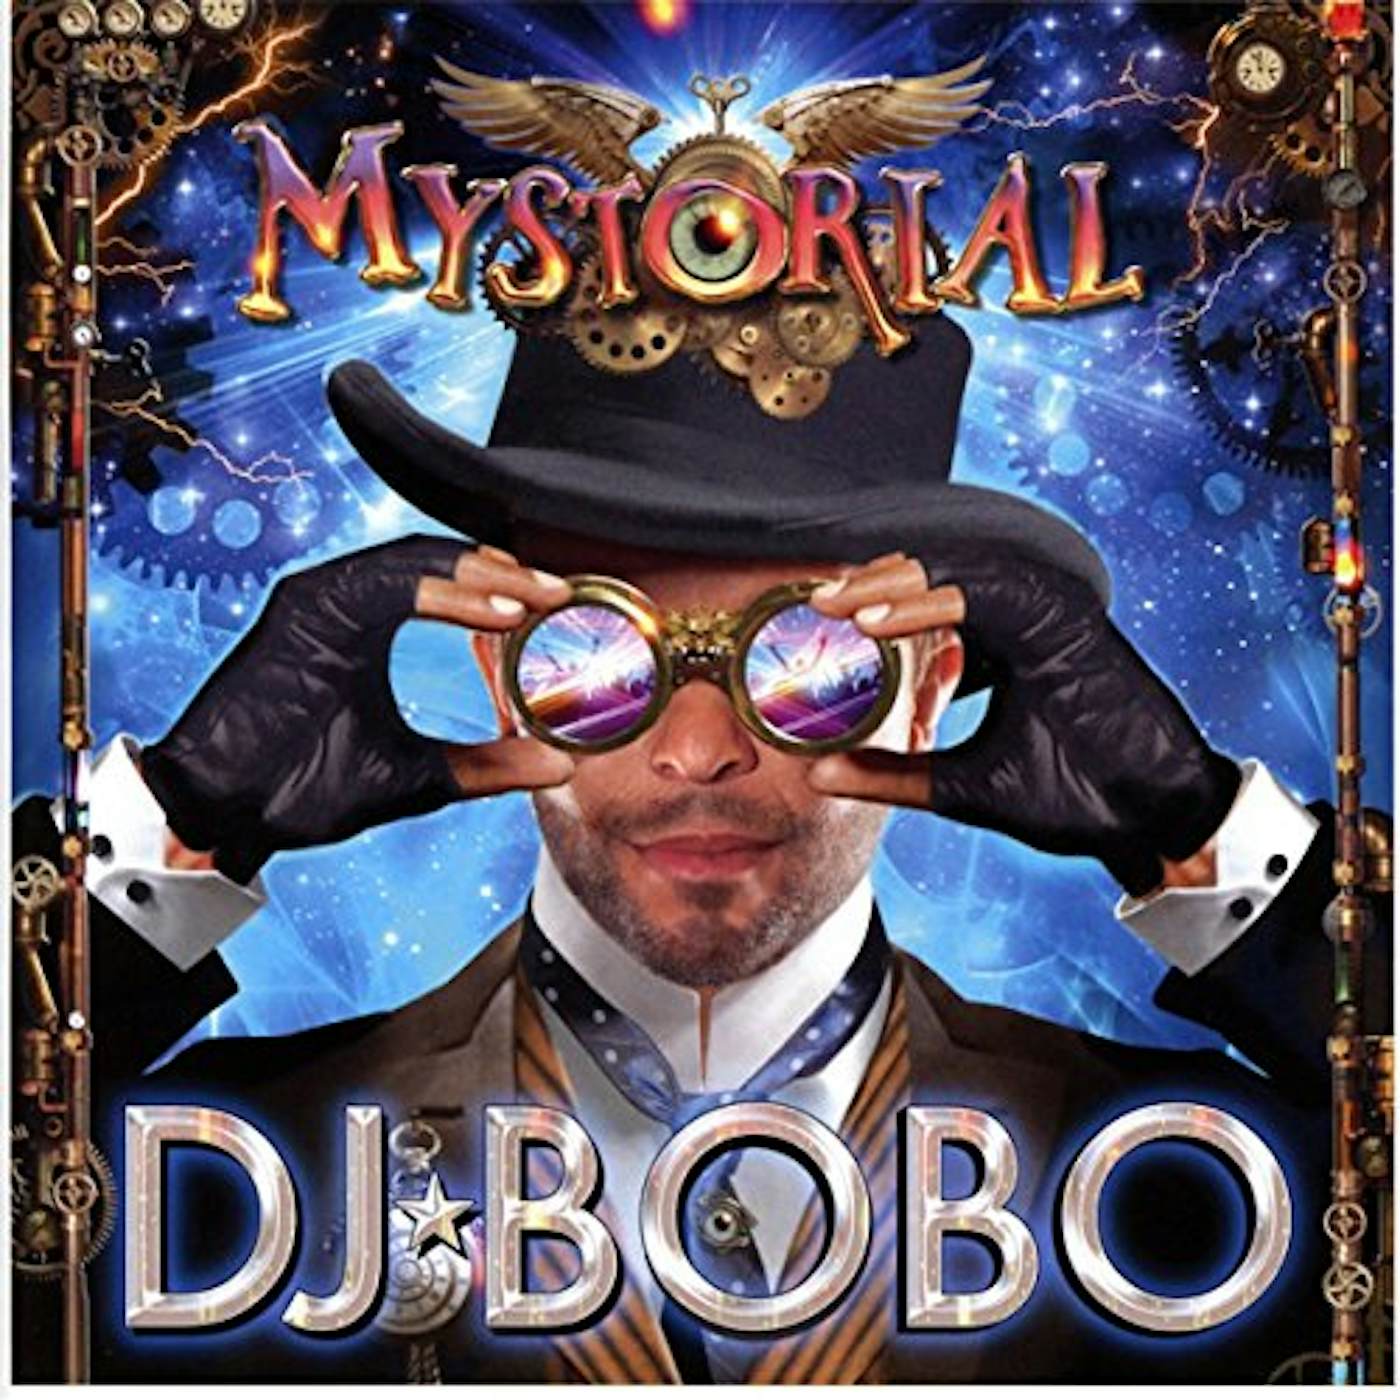 DJ BoBo MYSTORIAL CD